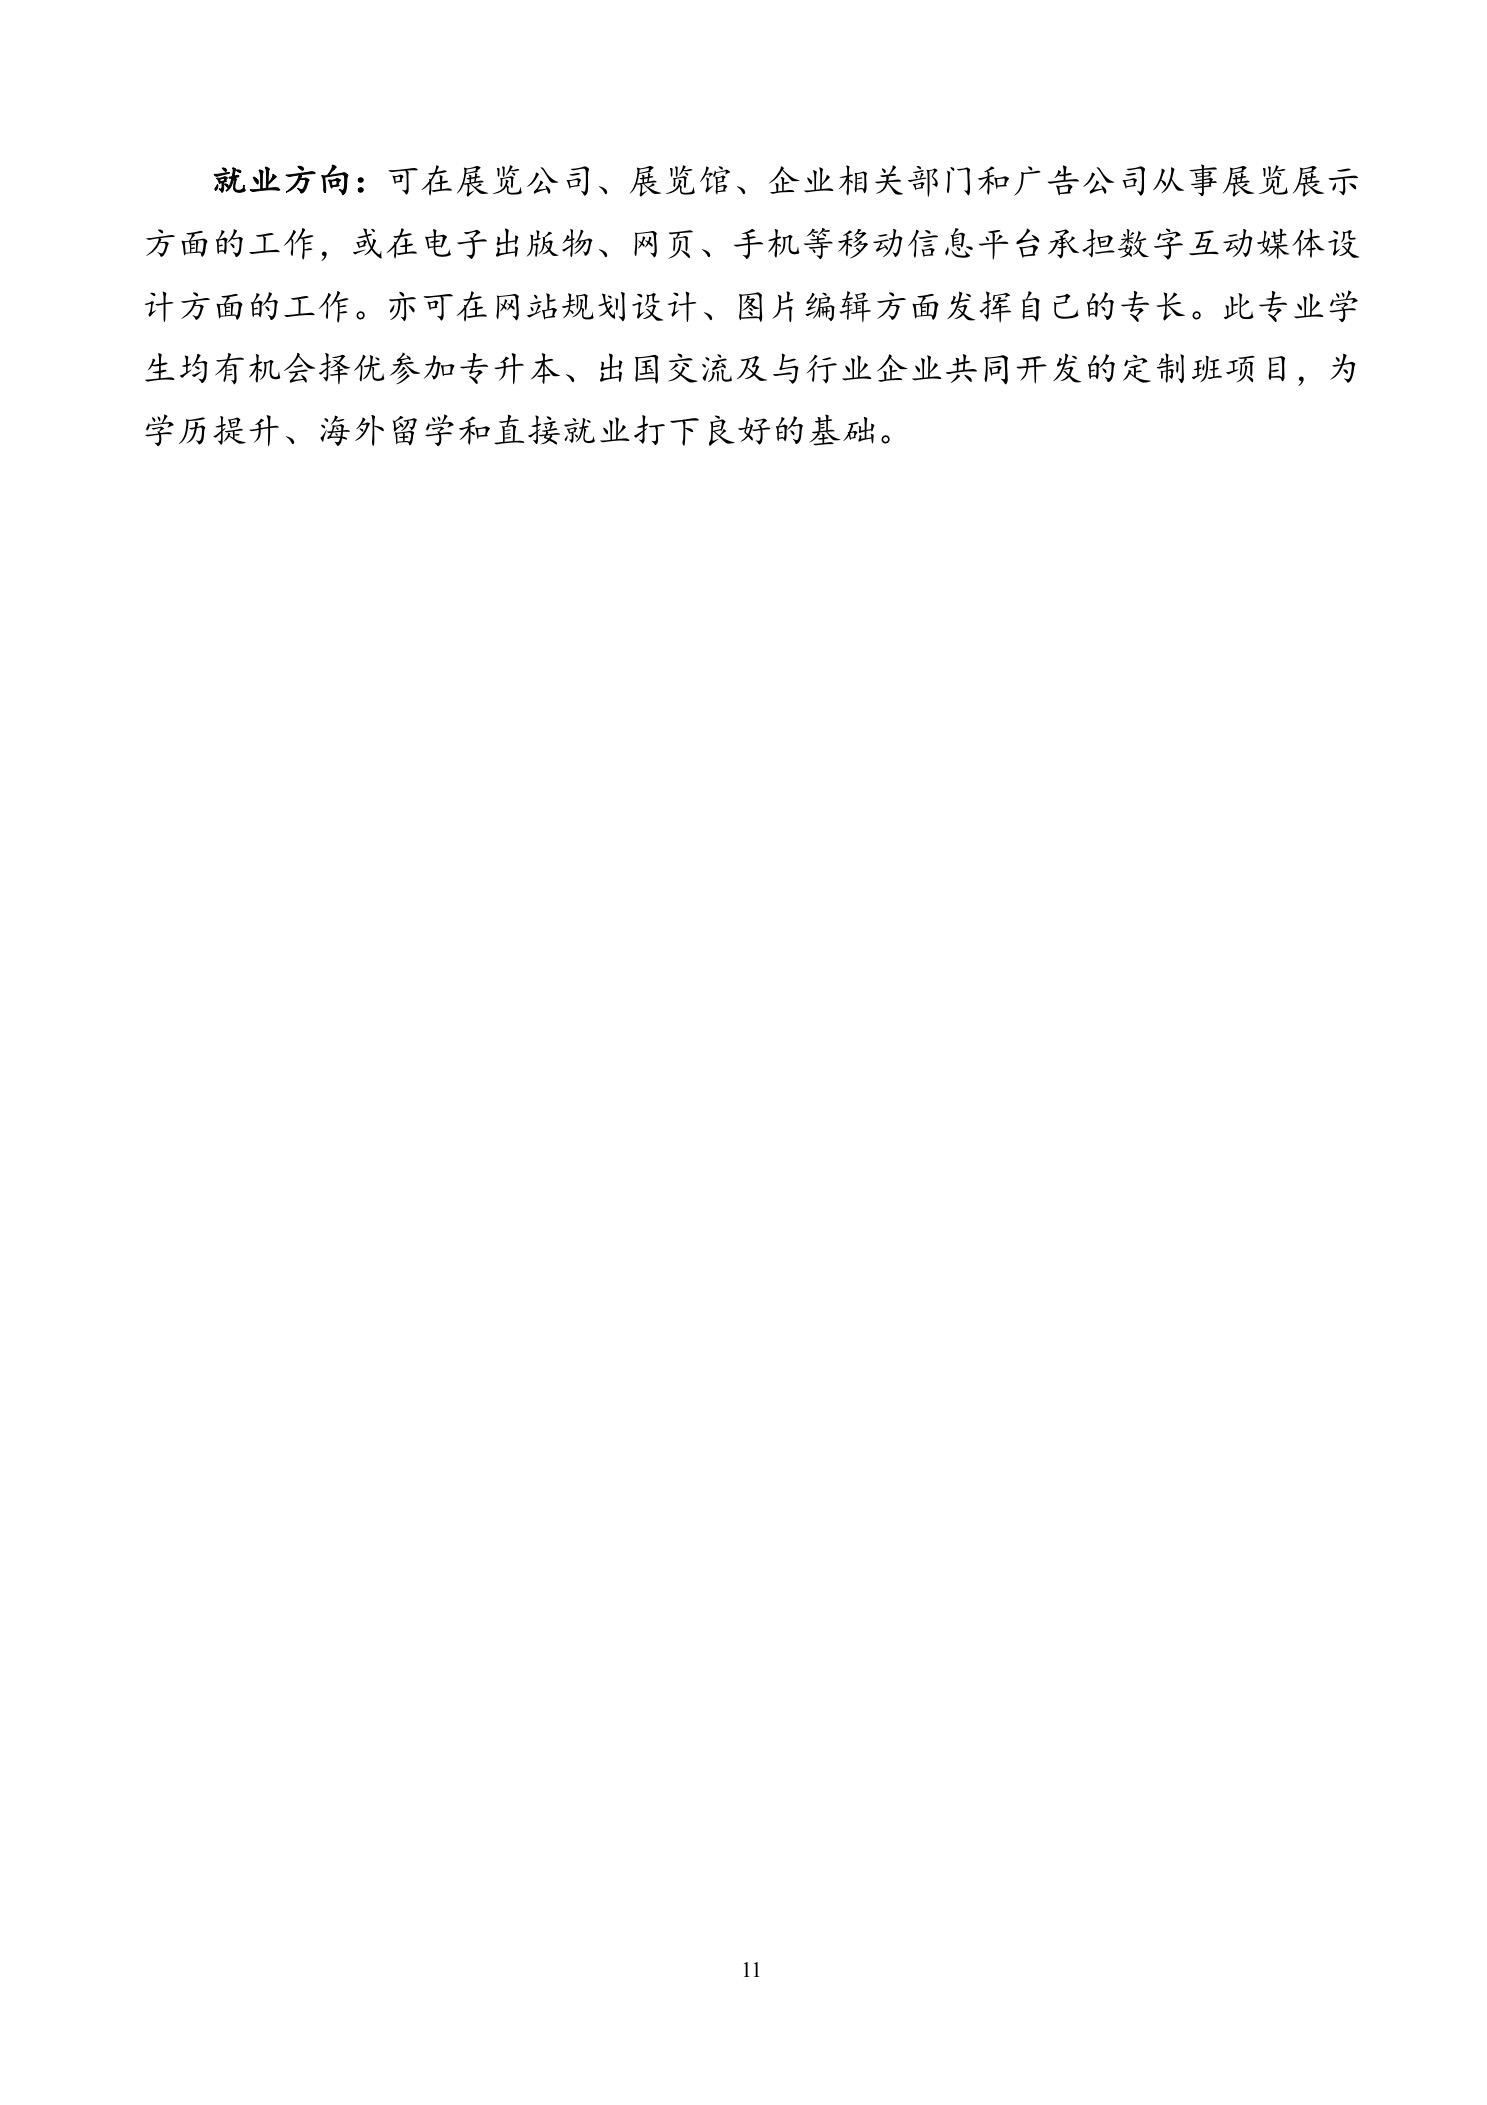 北京联合大学2018年艺术类招生简章20180103-page11 2.jpeg